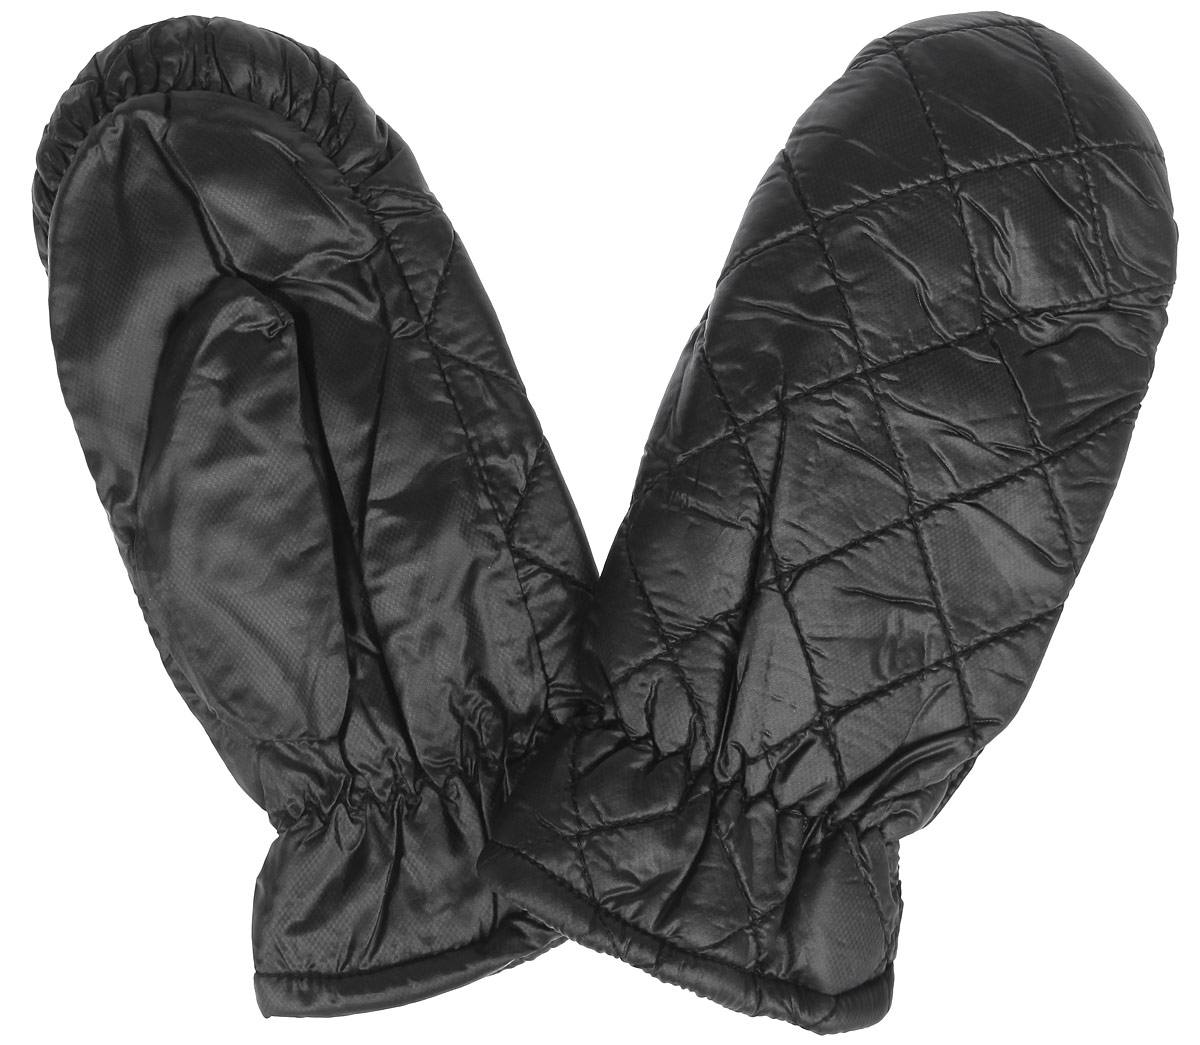 Рукавицы женские Modo, цвет: черный. SD105. Размер M (7)